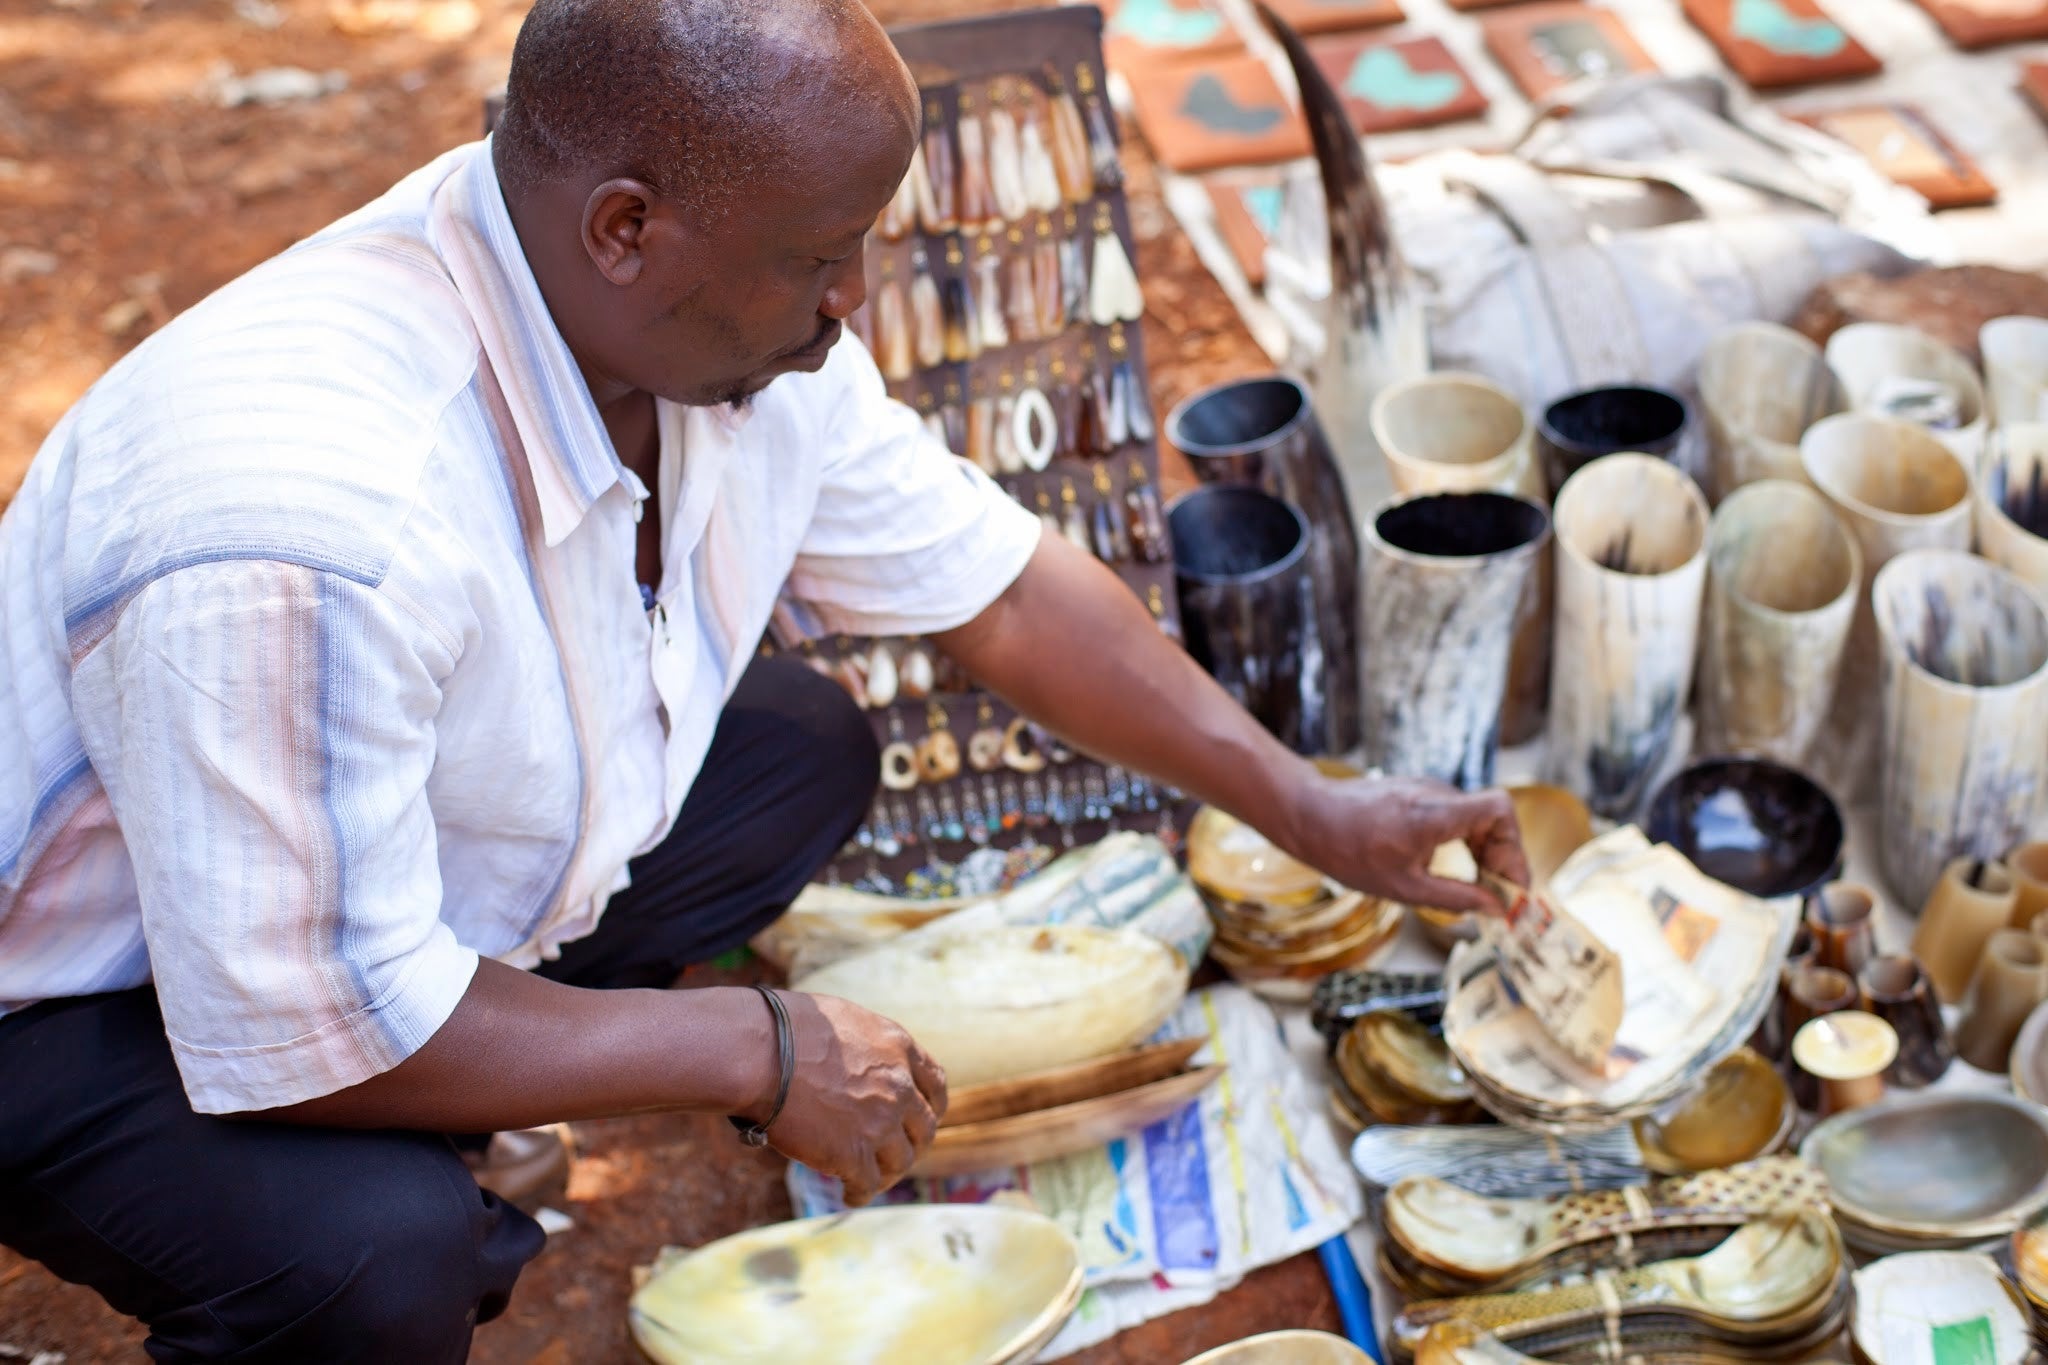 Horn Salt & Pepper Shakers - Kenyan materials and design for a fair trade boutique